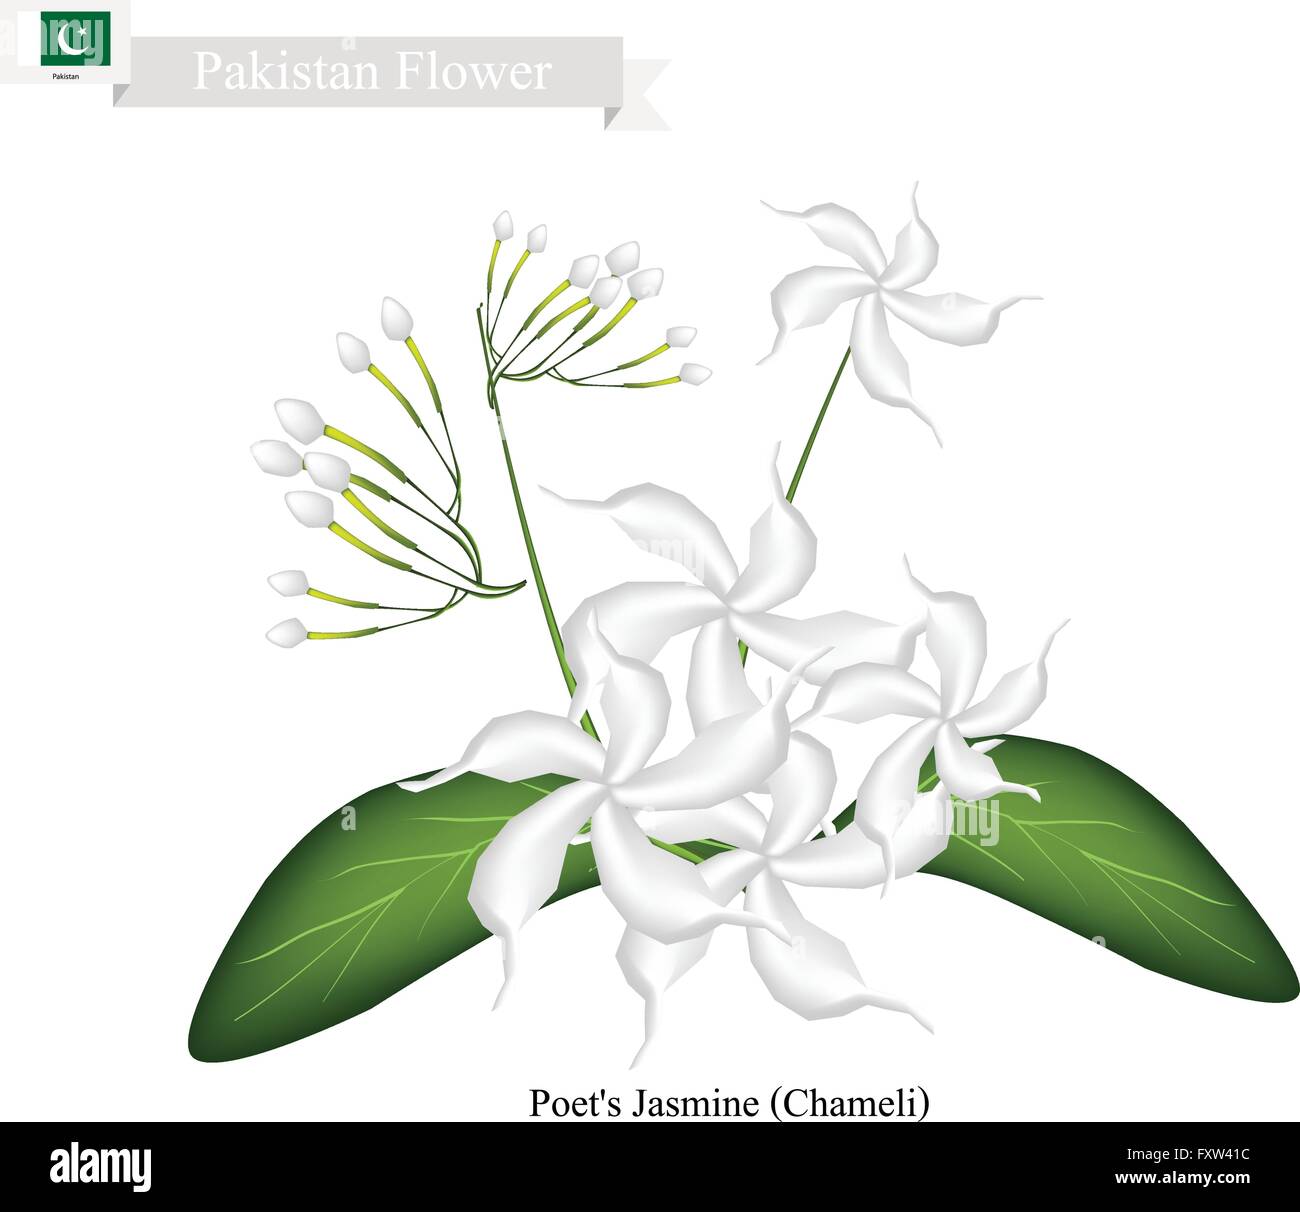 Pakistan Flower, Illustration of Poet's Jasmine or Chameli Flowers. The National Flower of Pakistan. Stock Vector